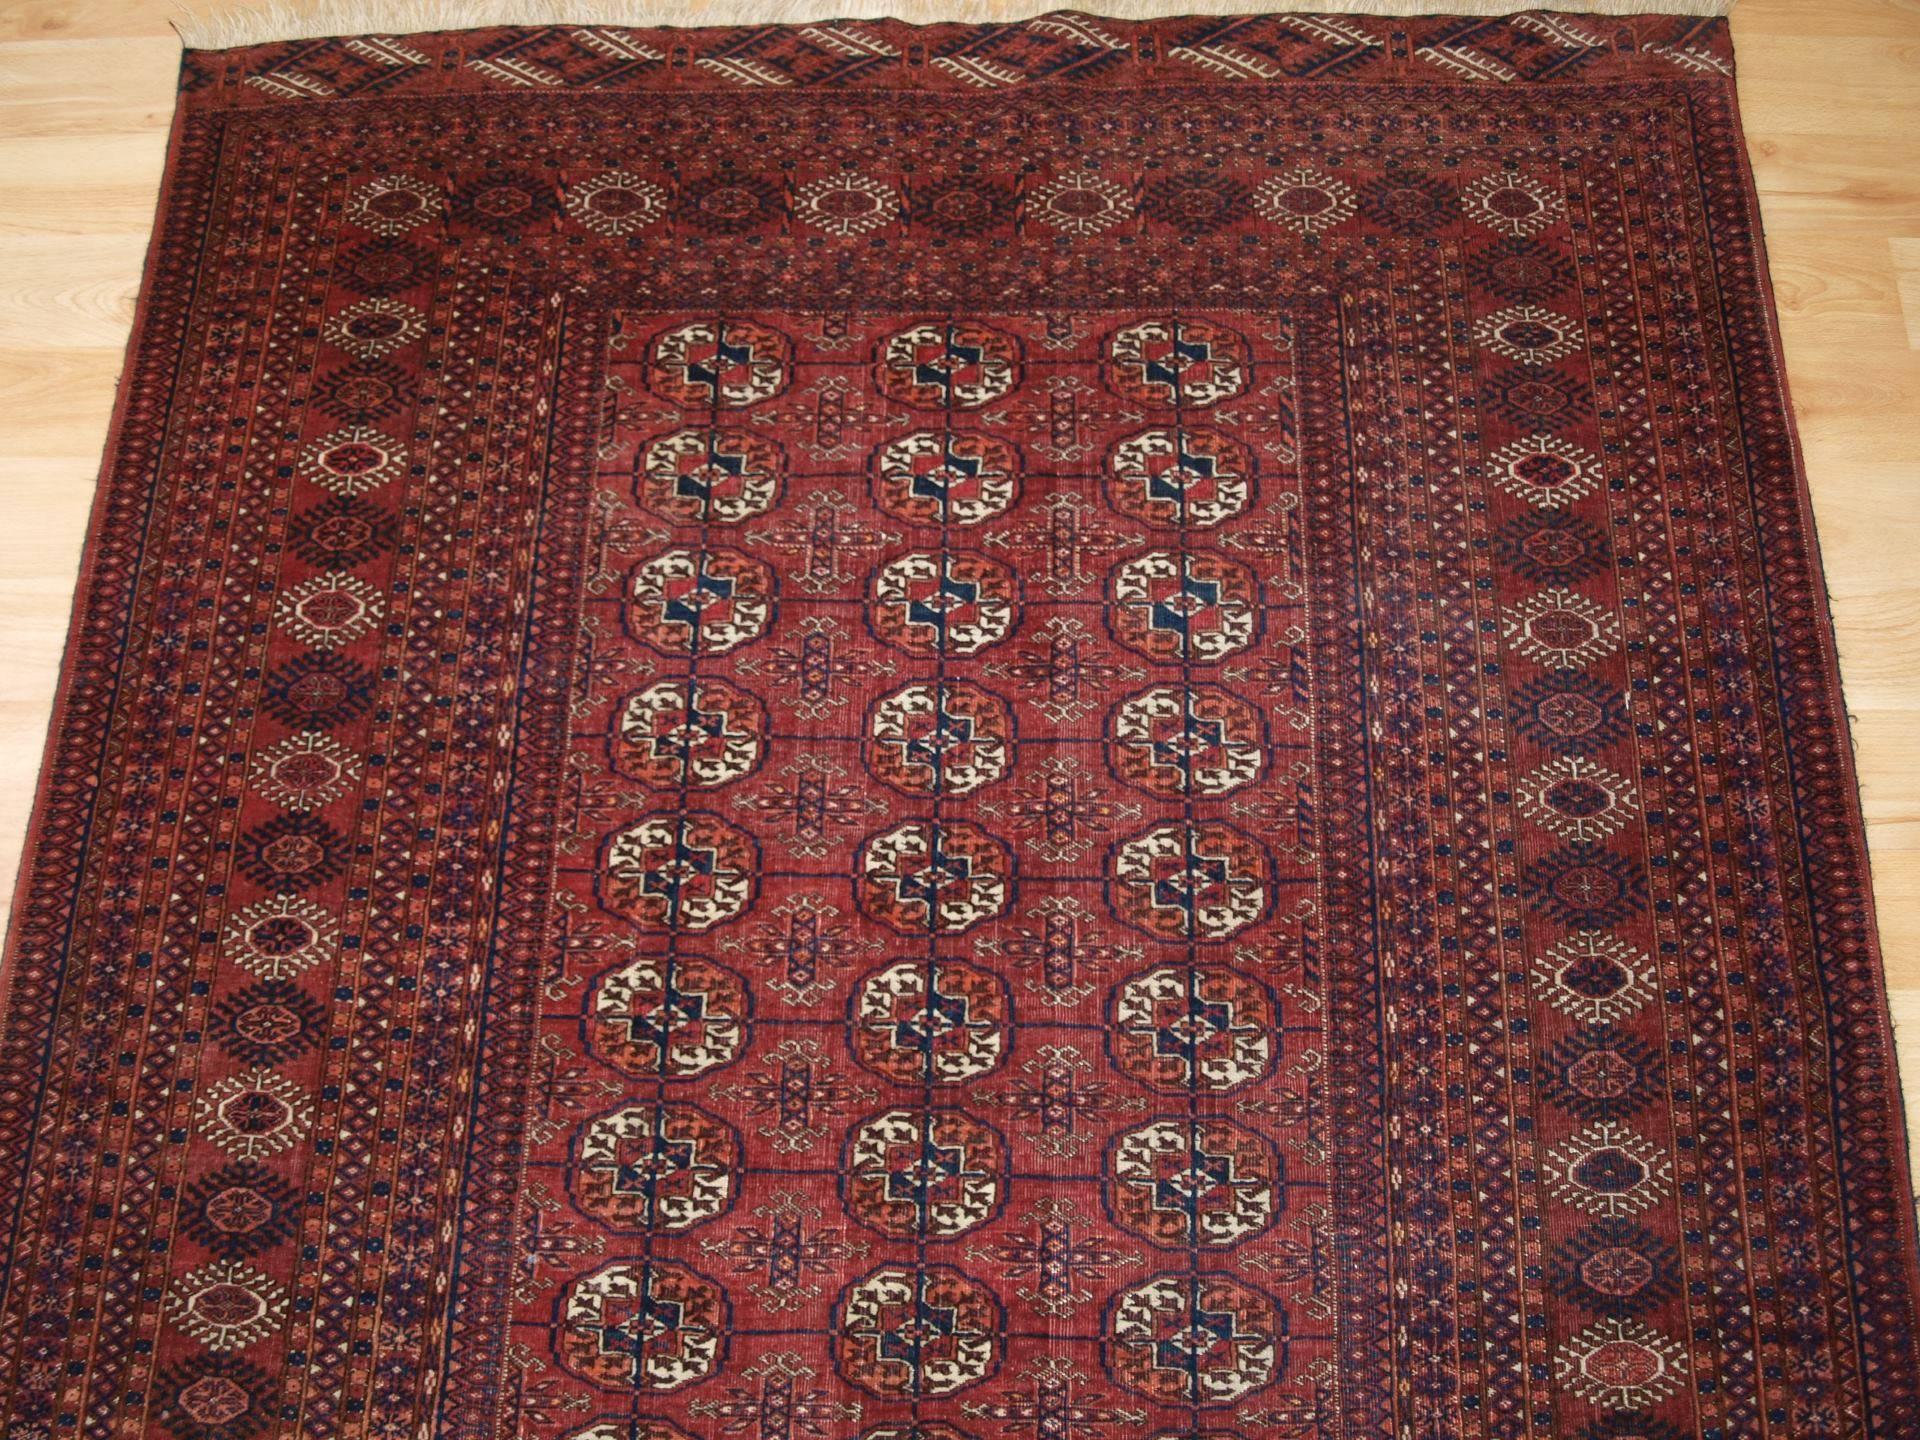 Antique Tekke Turkmen Rug of Excellent Design and Color, circa 1900 For Sale 2